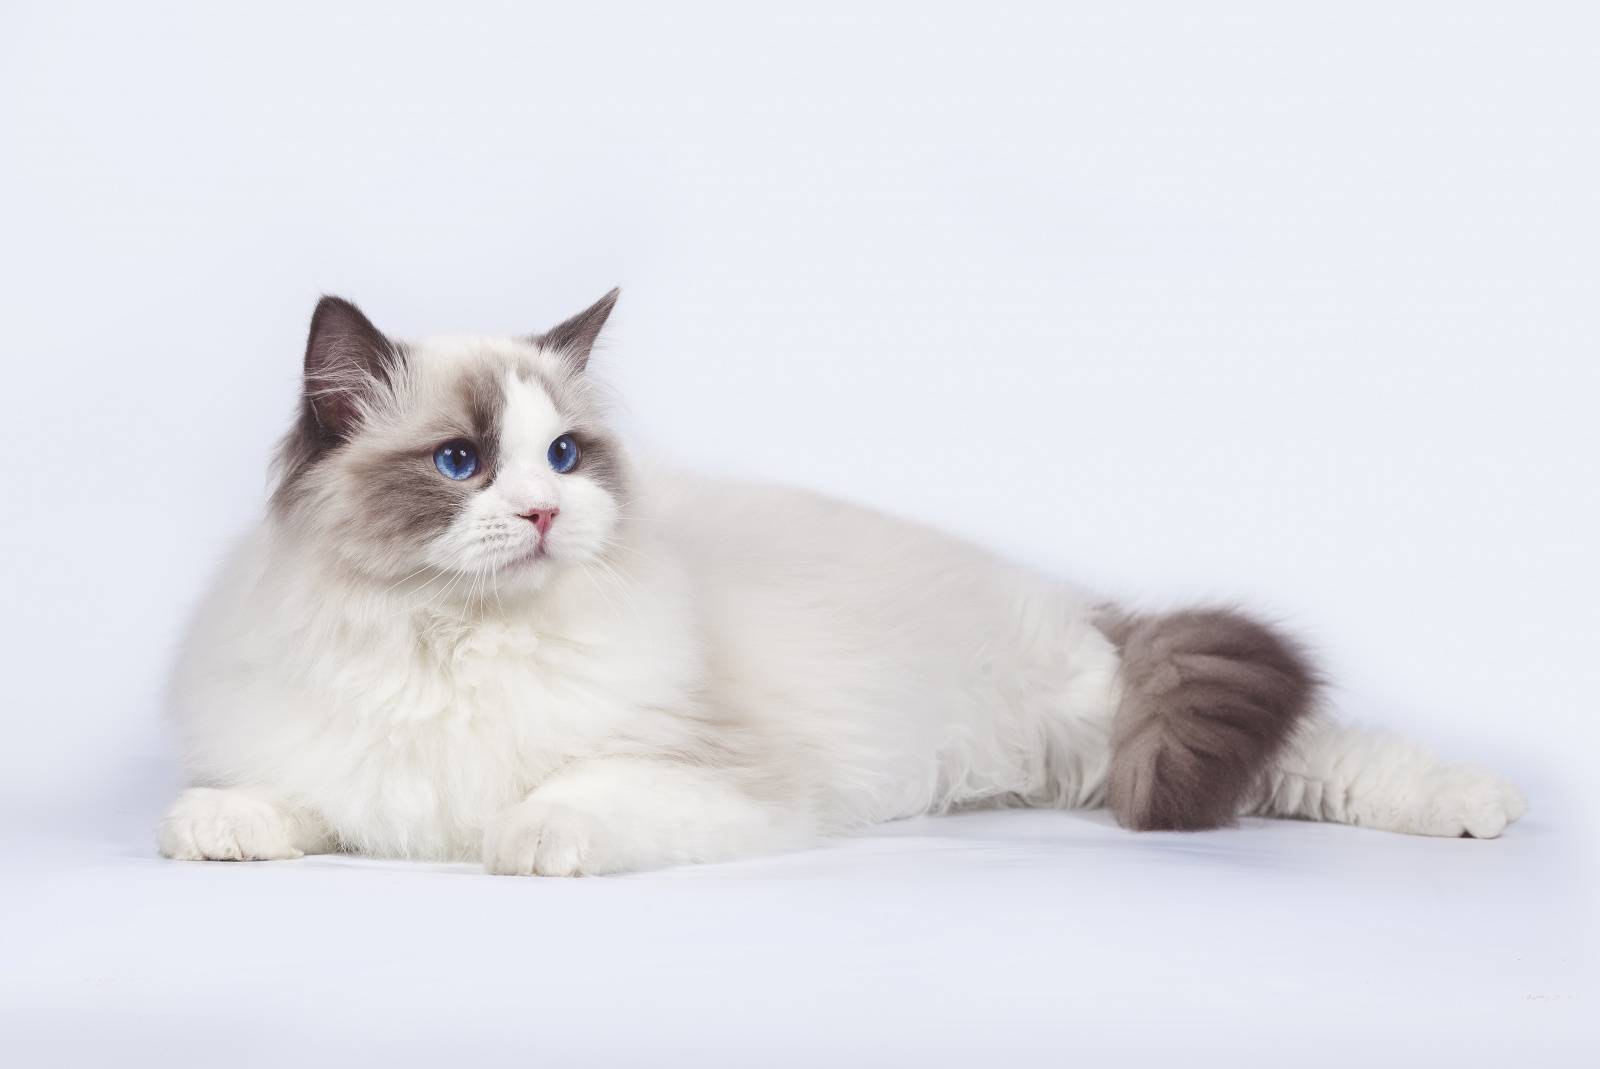 Рэгдолл: описание породы, характер кошки, советы по содержанию и уходу, фото ragdoll